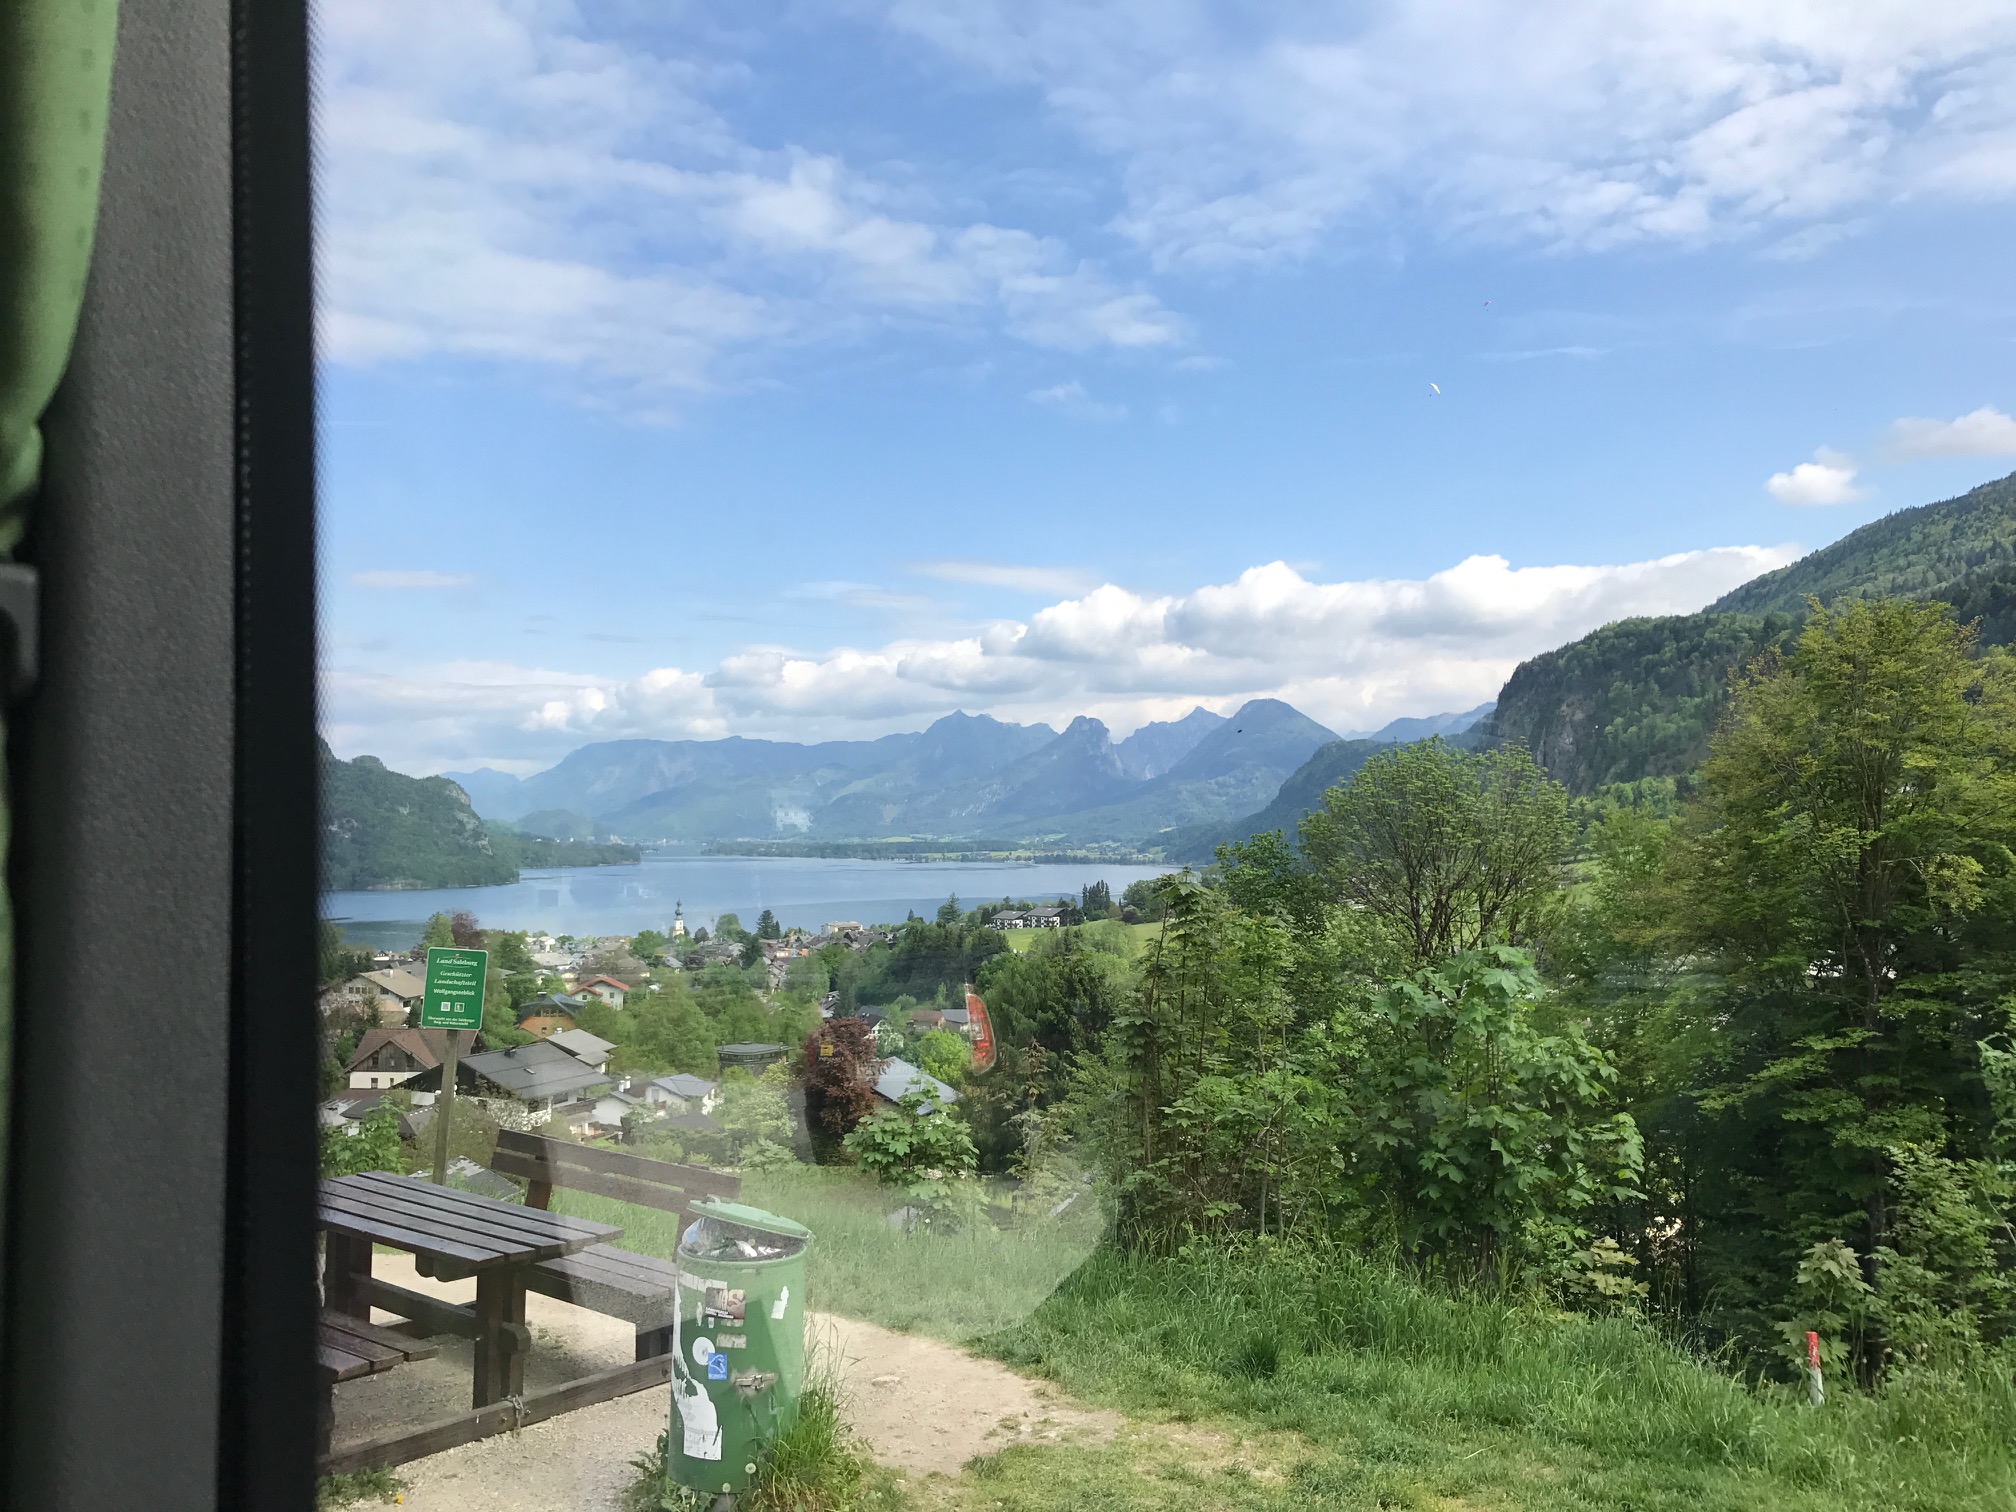 Salzburg: On we went, through glorious mountain countryside to...